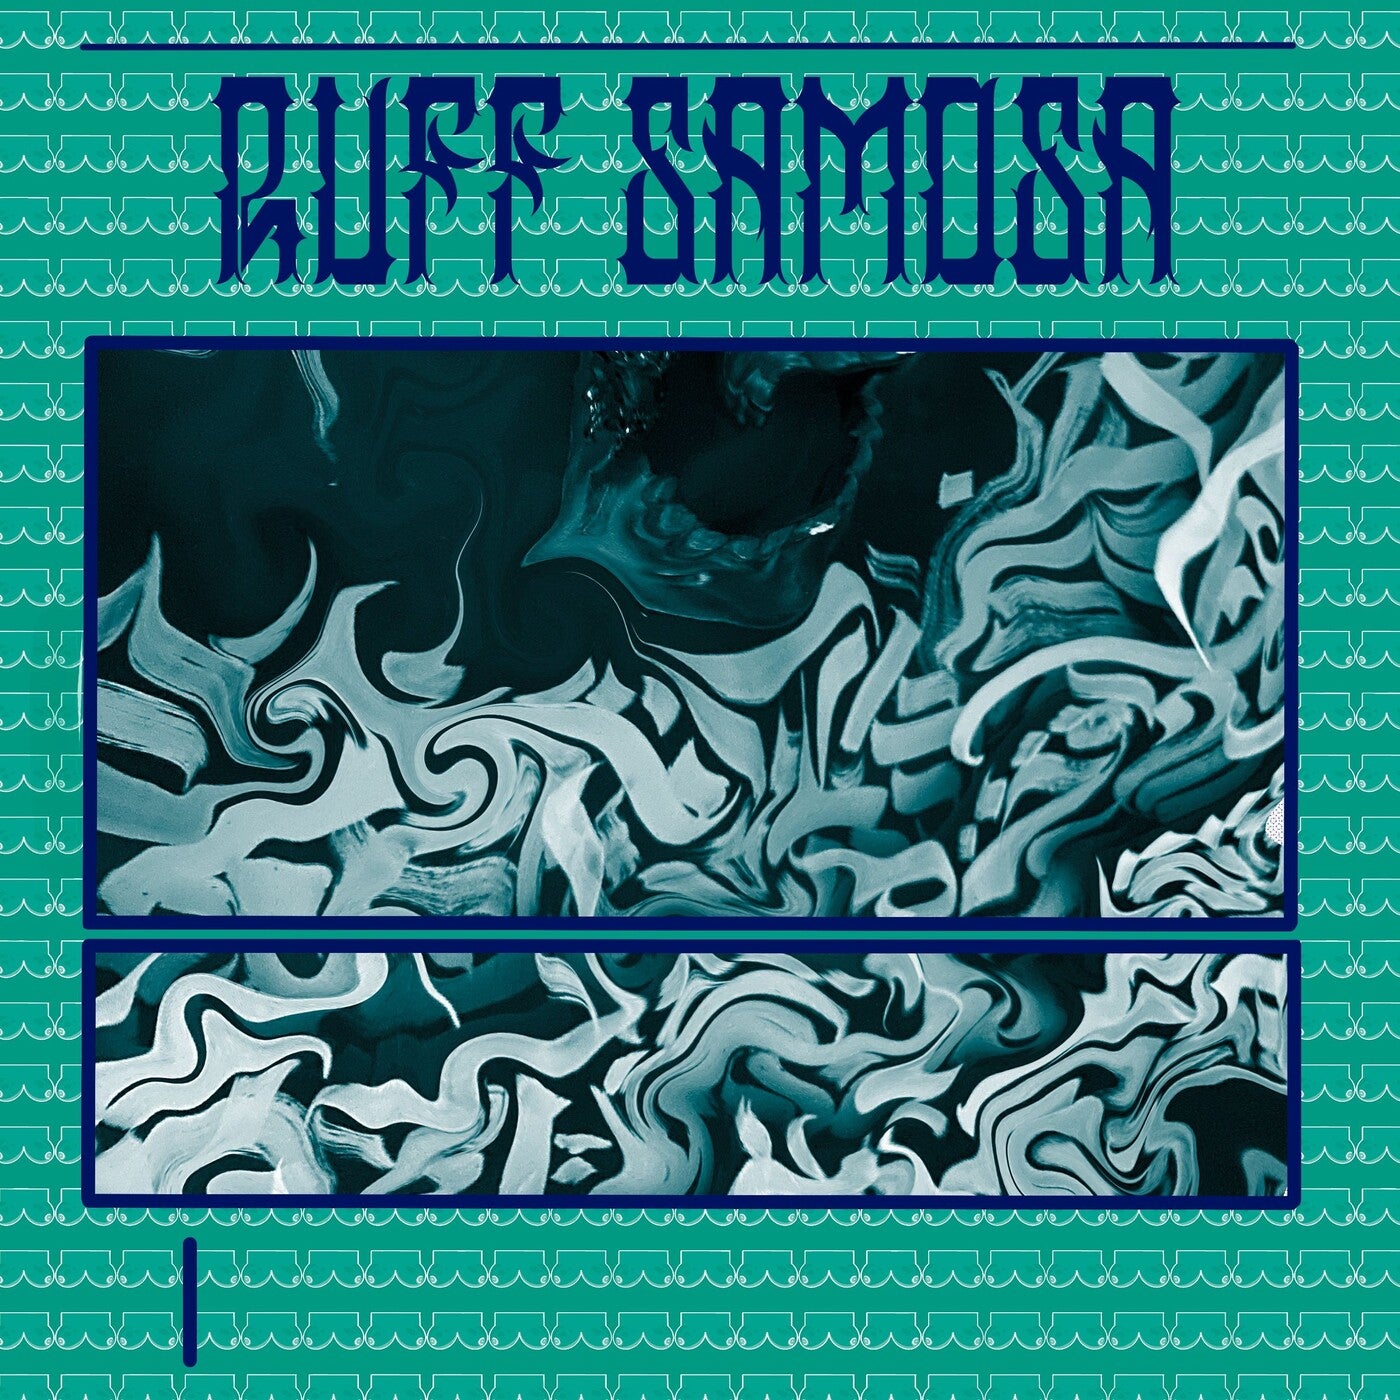 Ruff Samosa